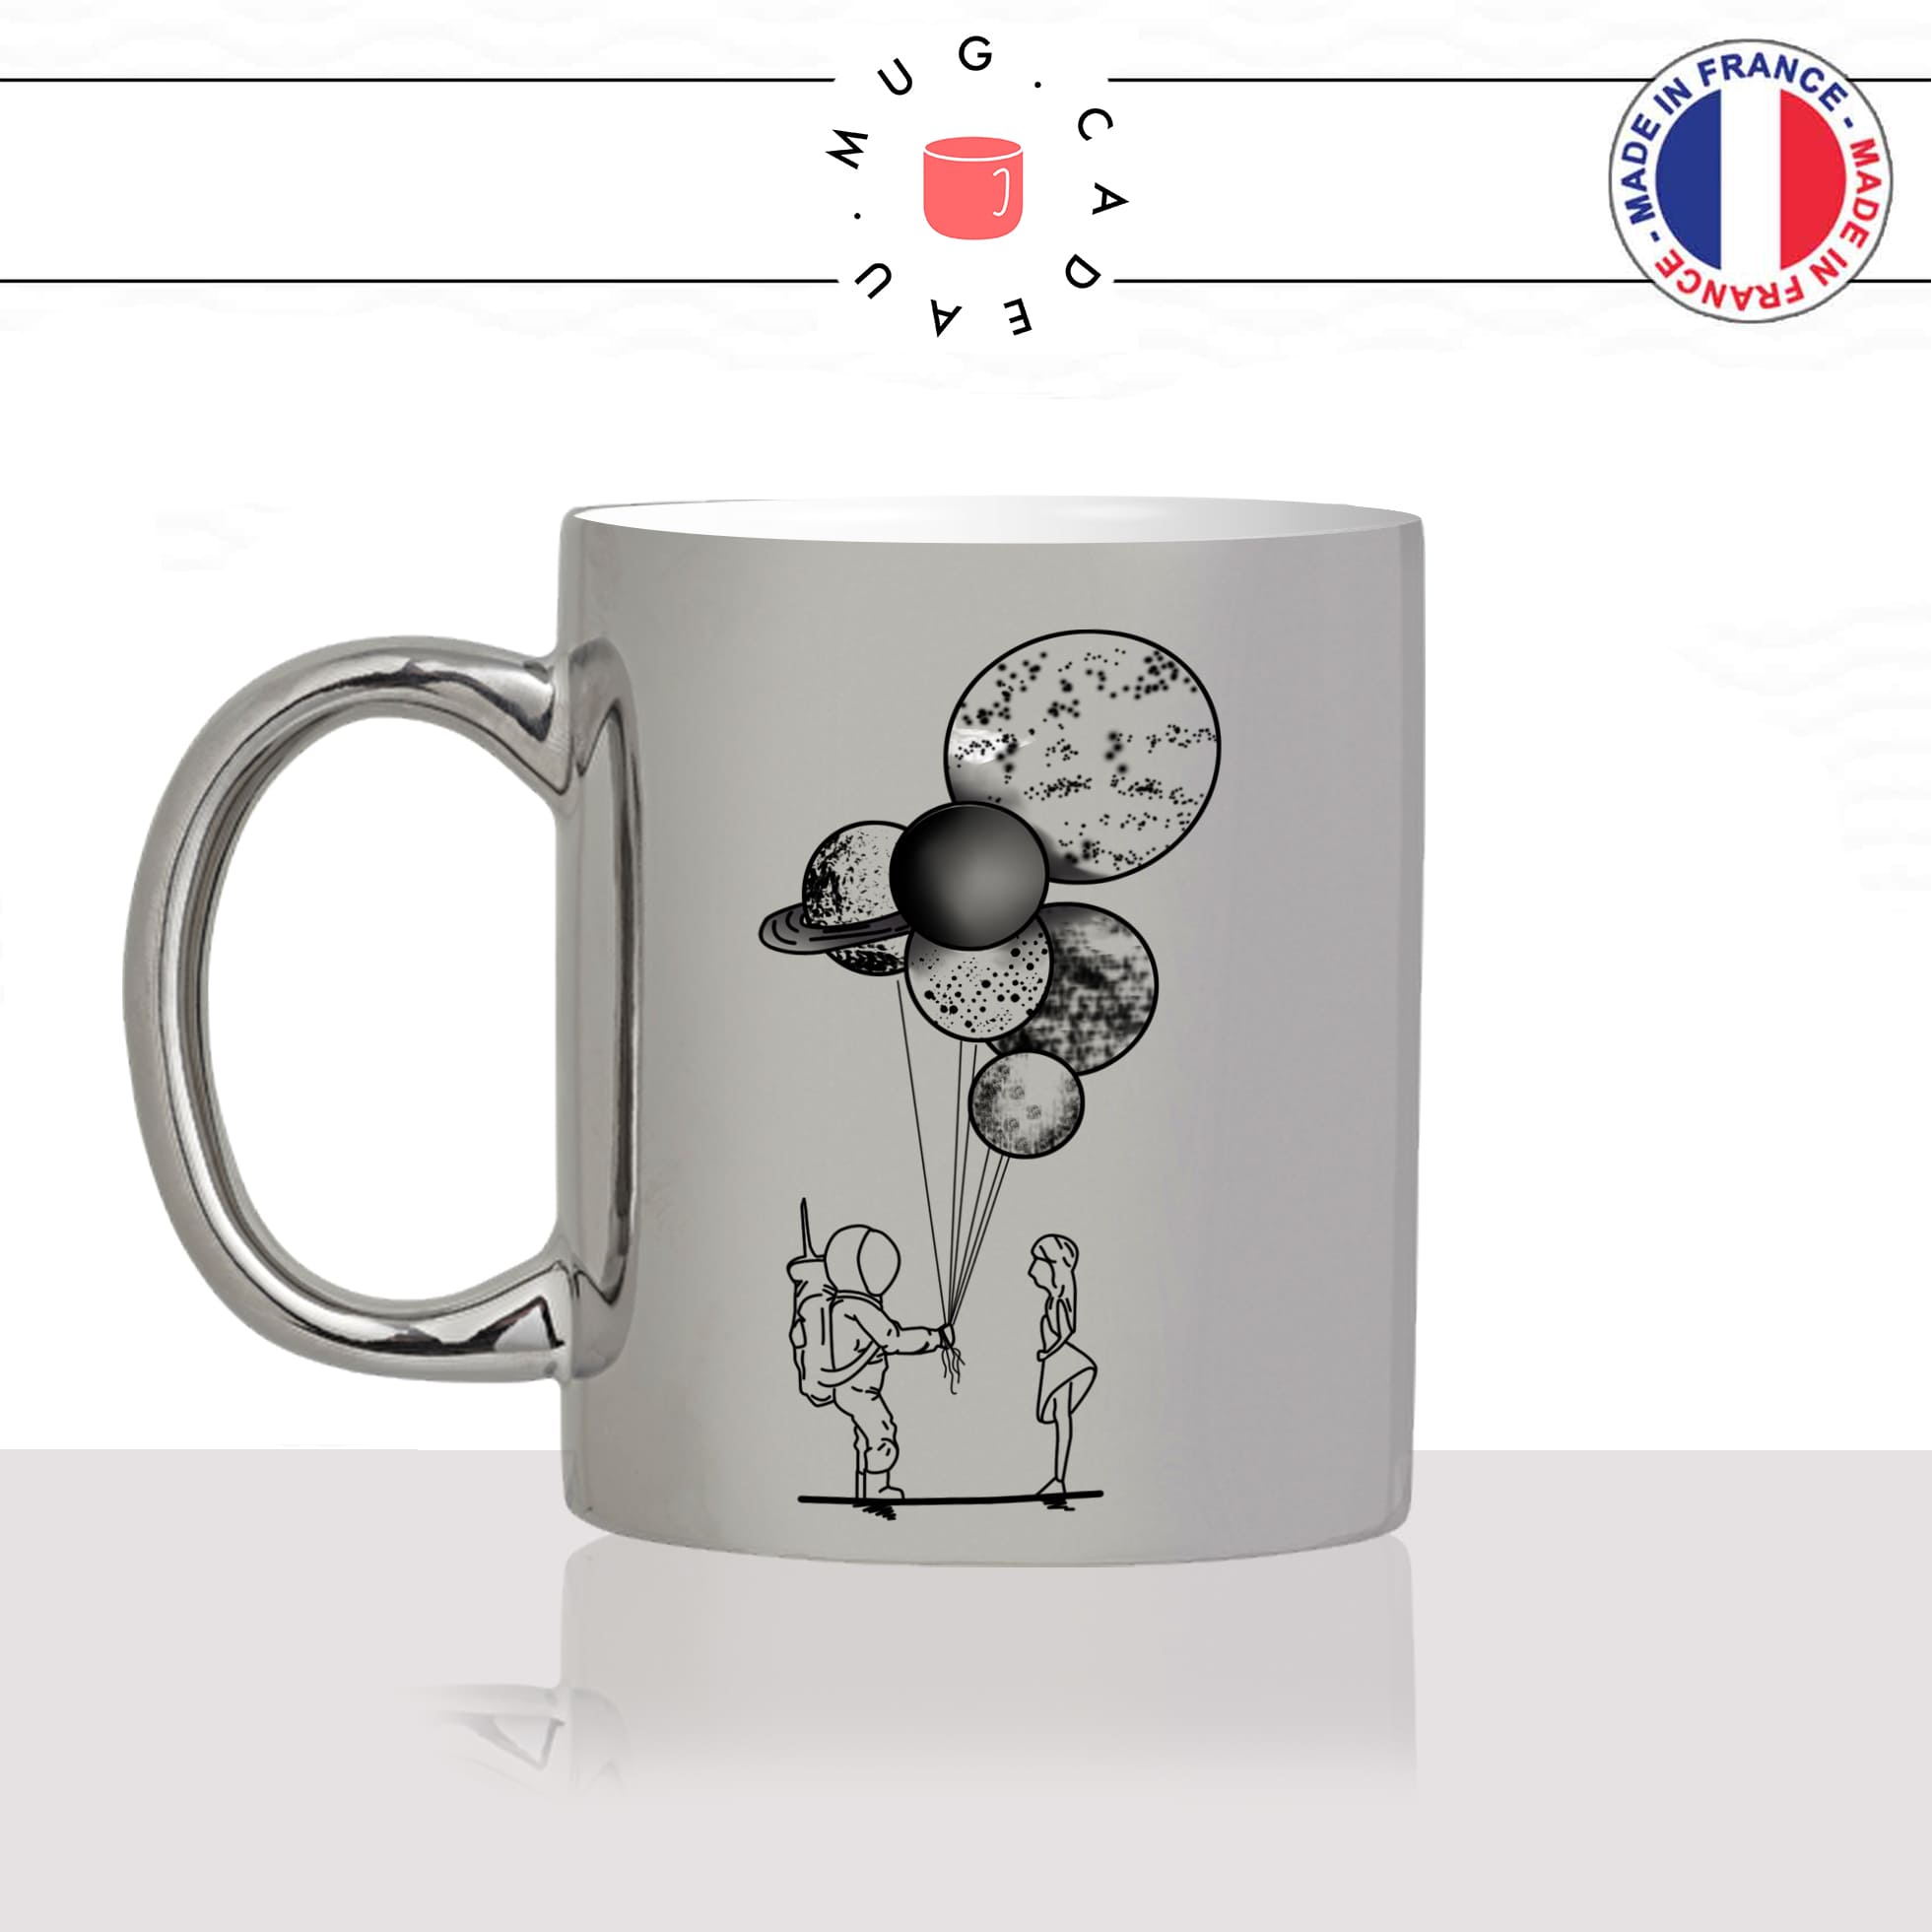 mug-tasse-argent-argenté-silver-astronaute-bouquet-de-planetes-terre-saturne-uranuscouple-mignon-humour-idée-cadeau-fun-cool-café-thé